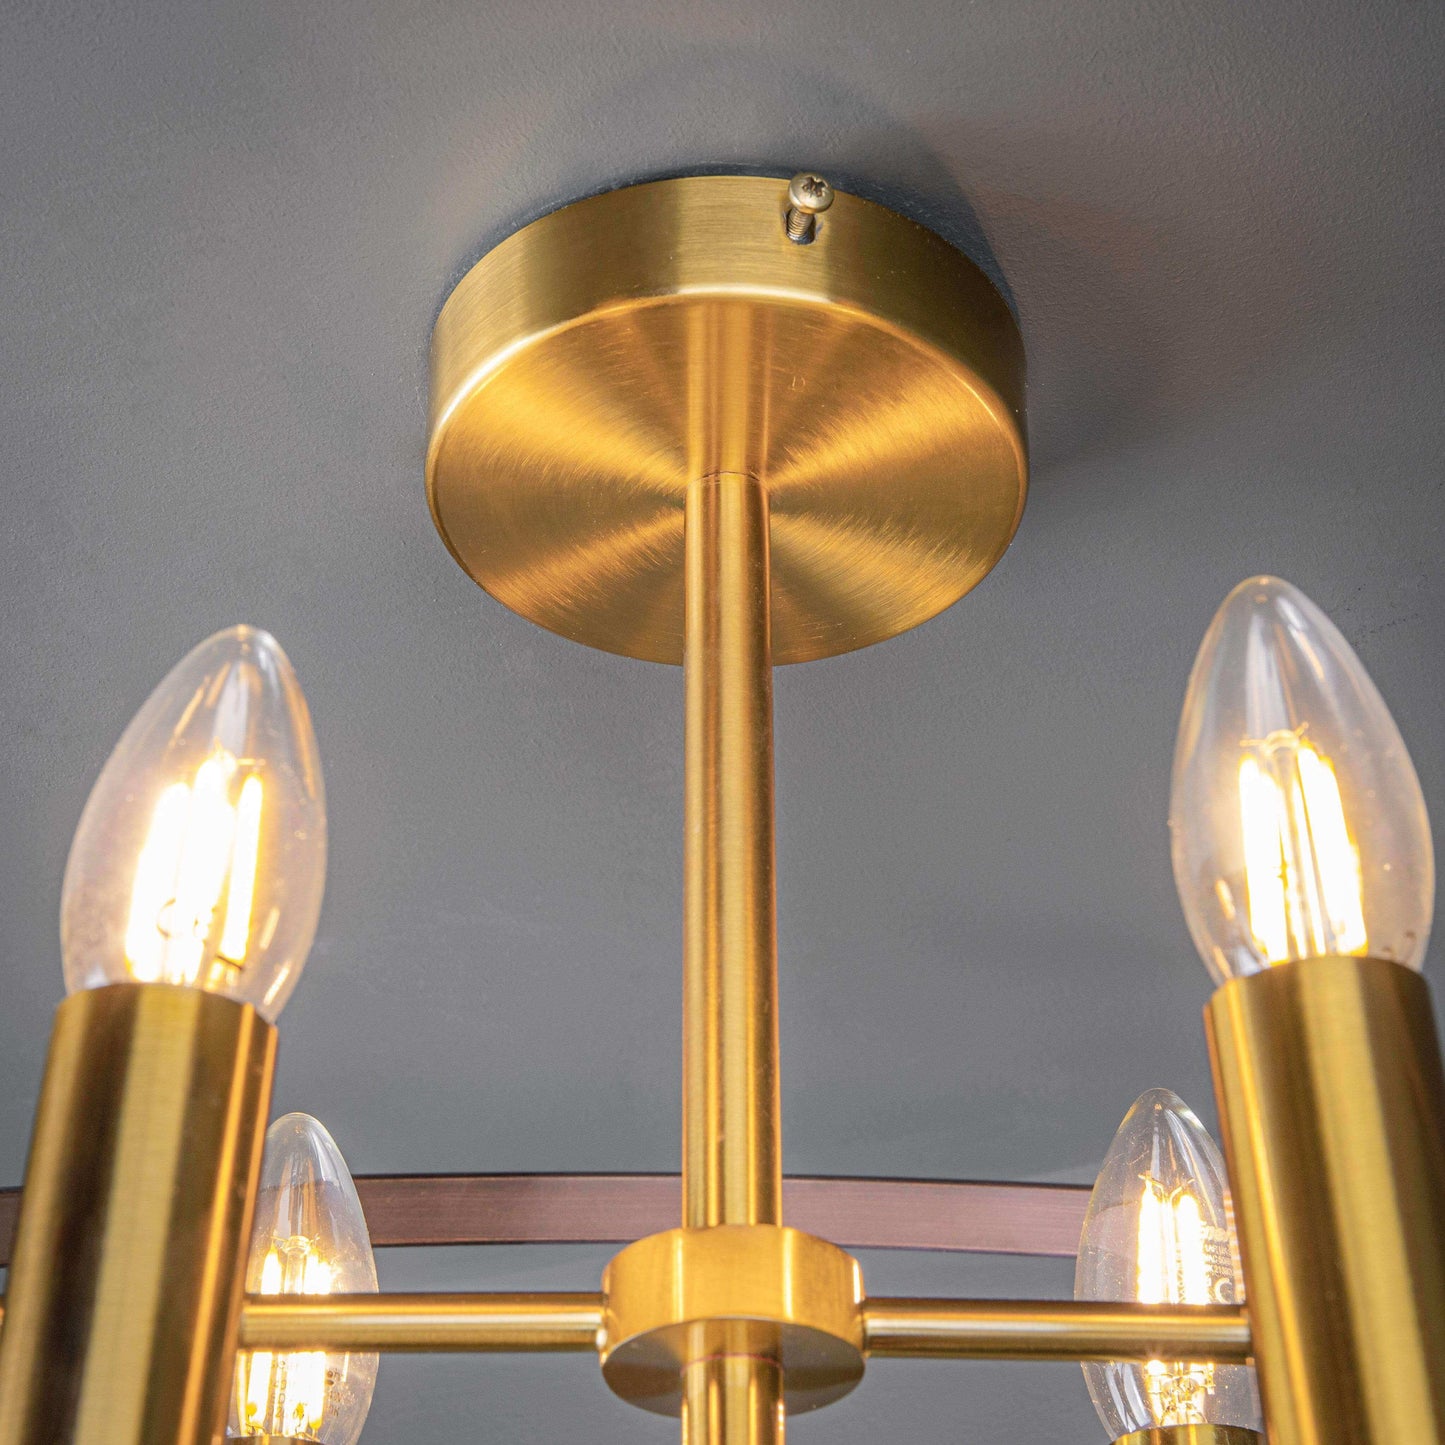 Lights  -  4 Light Bronze/Gold Semi Flush Ceiling light  -  50147035